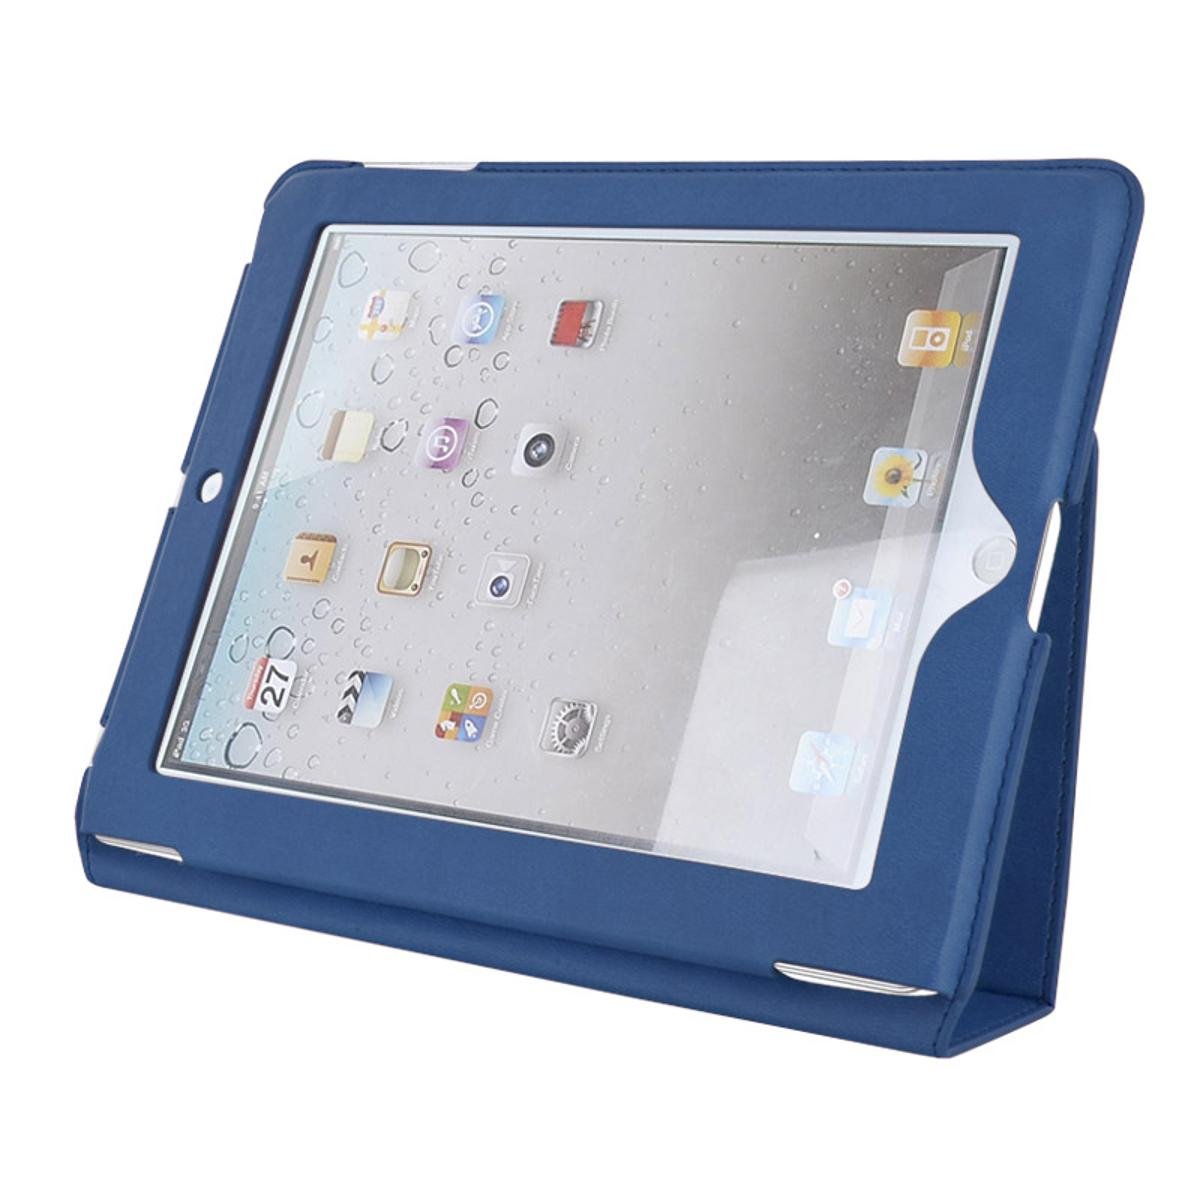 4World New iPad Etui ochronne Slim. niebieskie 08392